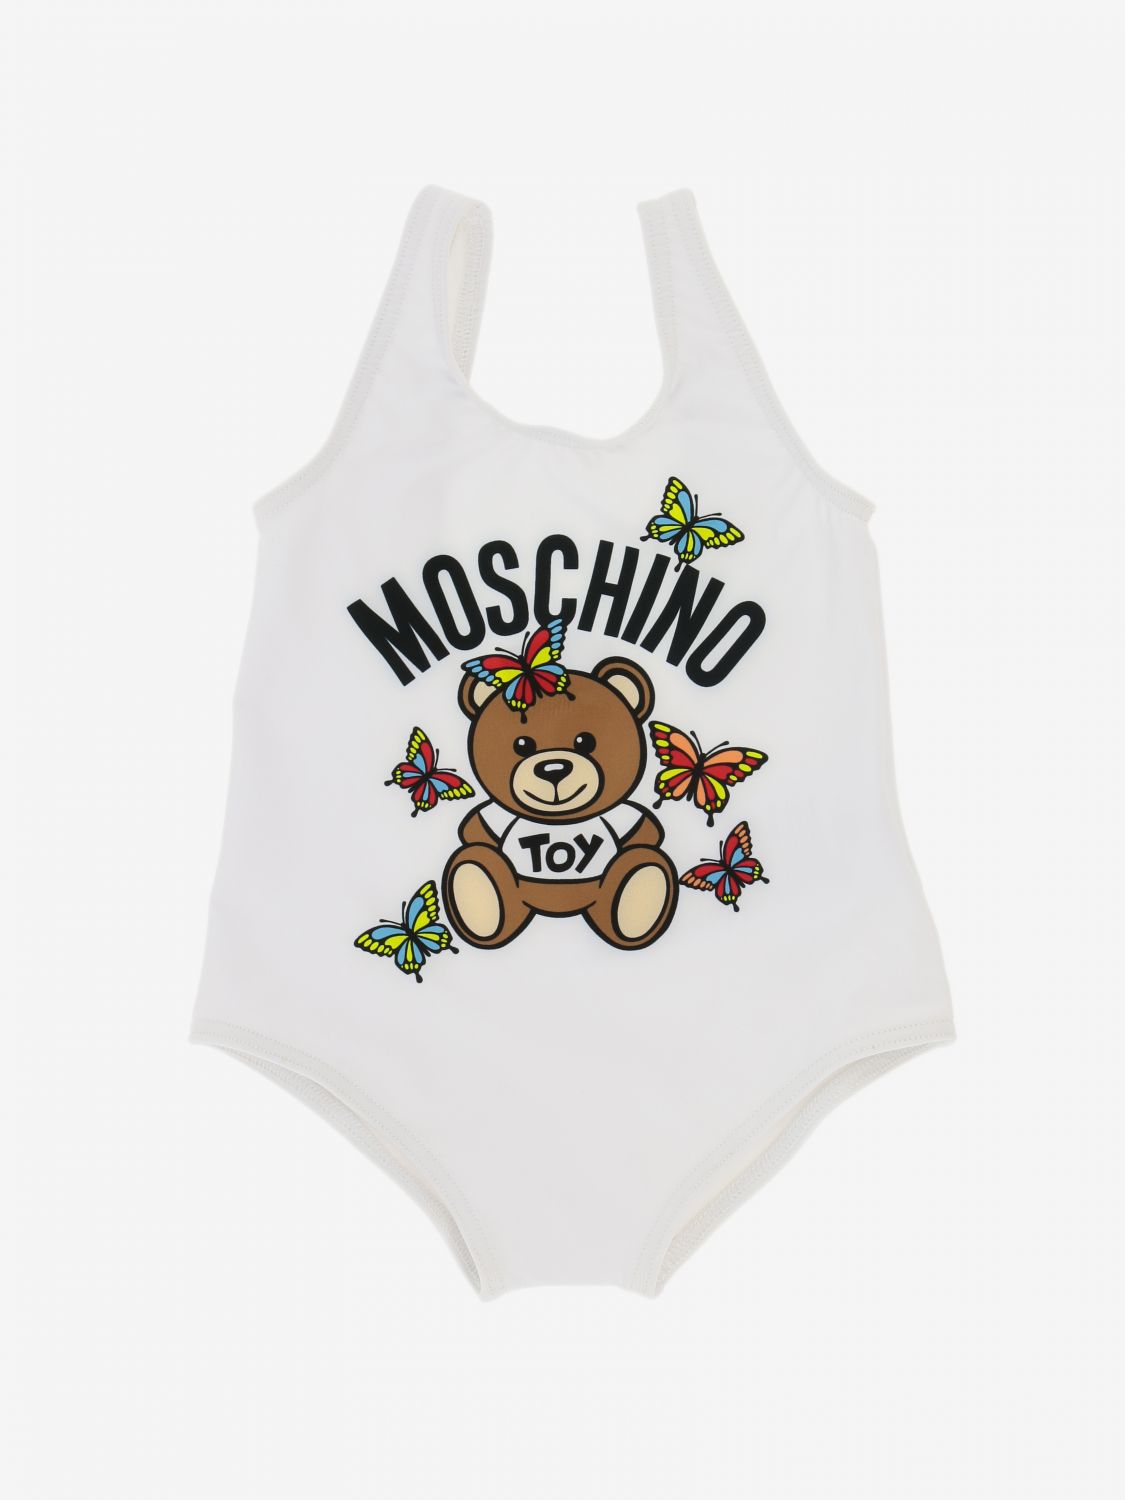 moschino swimwear